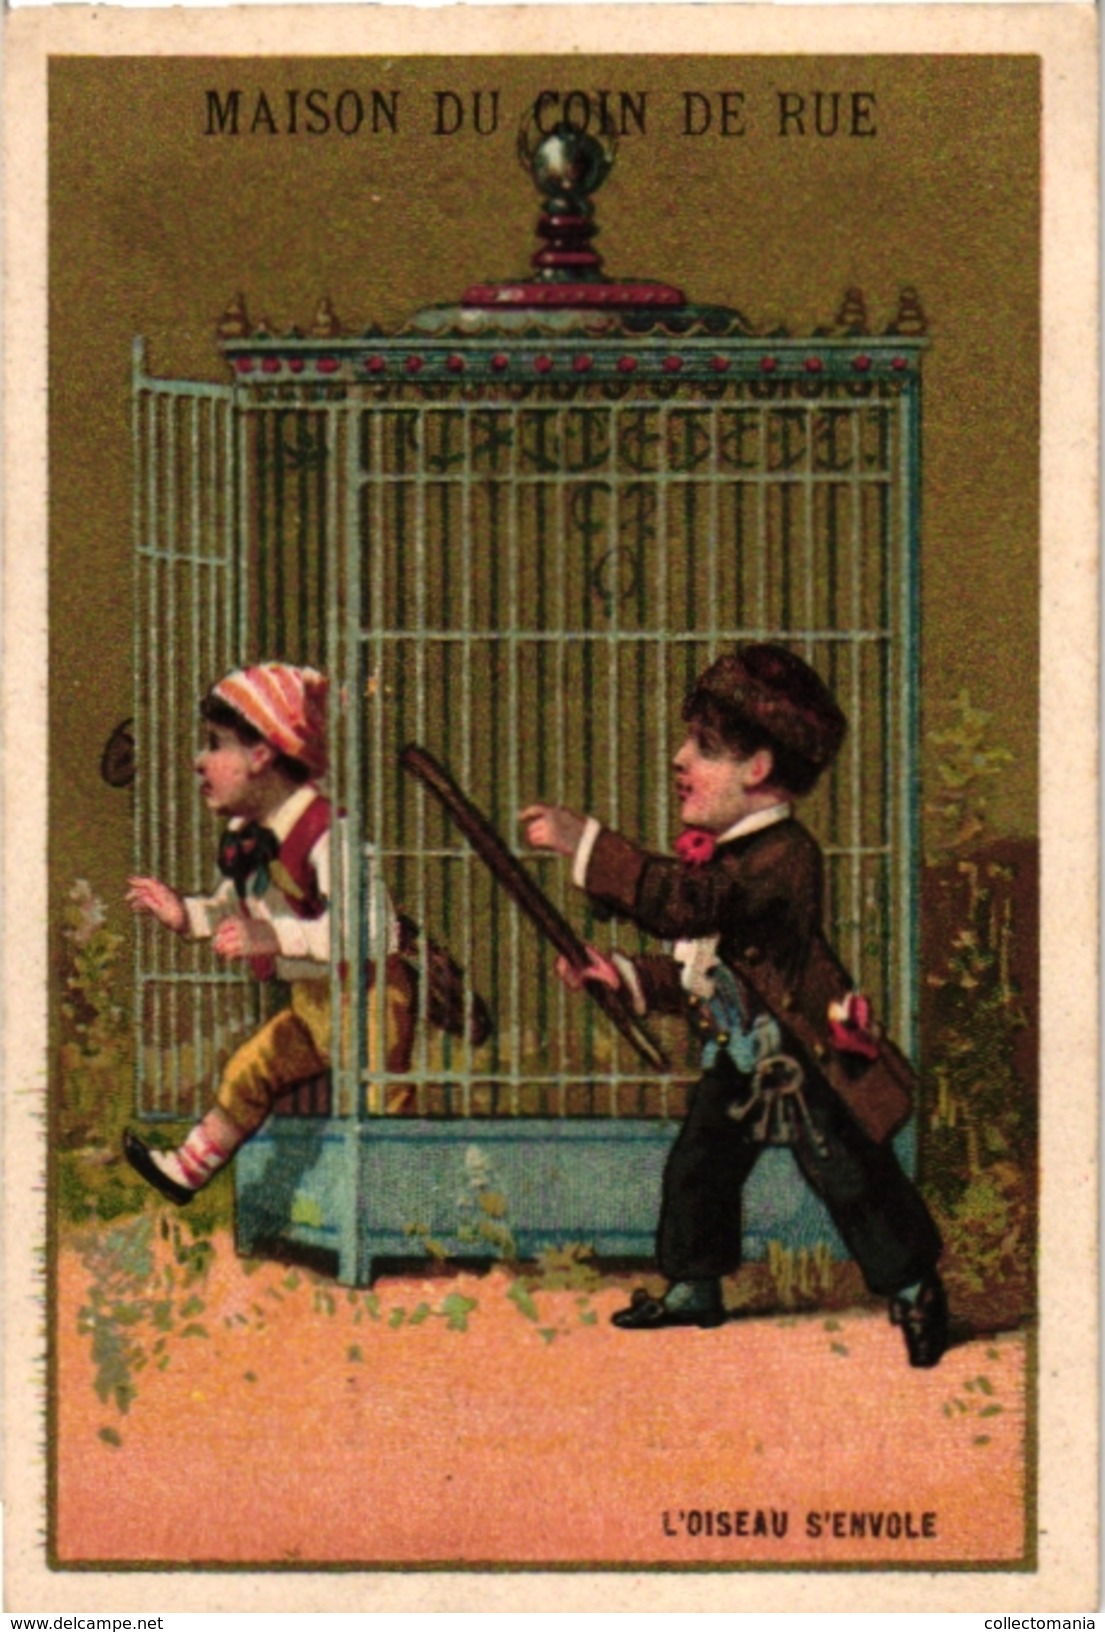 6 Cards C1900 Litho Paris Maison Franchomme Maison du Coin de Rue  Bird Cages Pierrot Printer Champenois